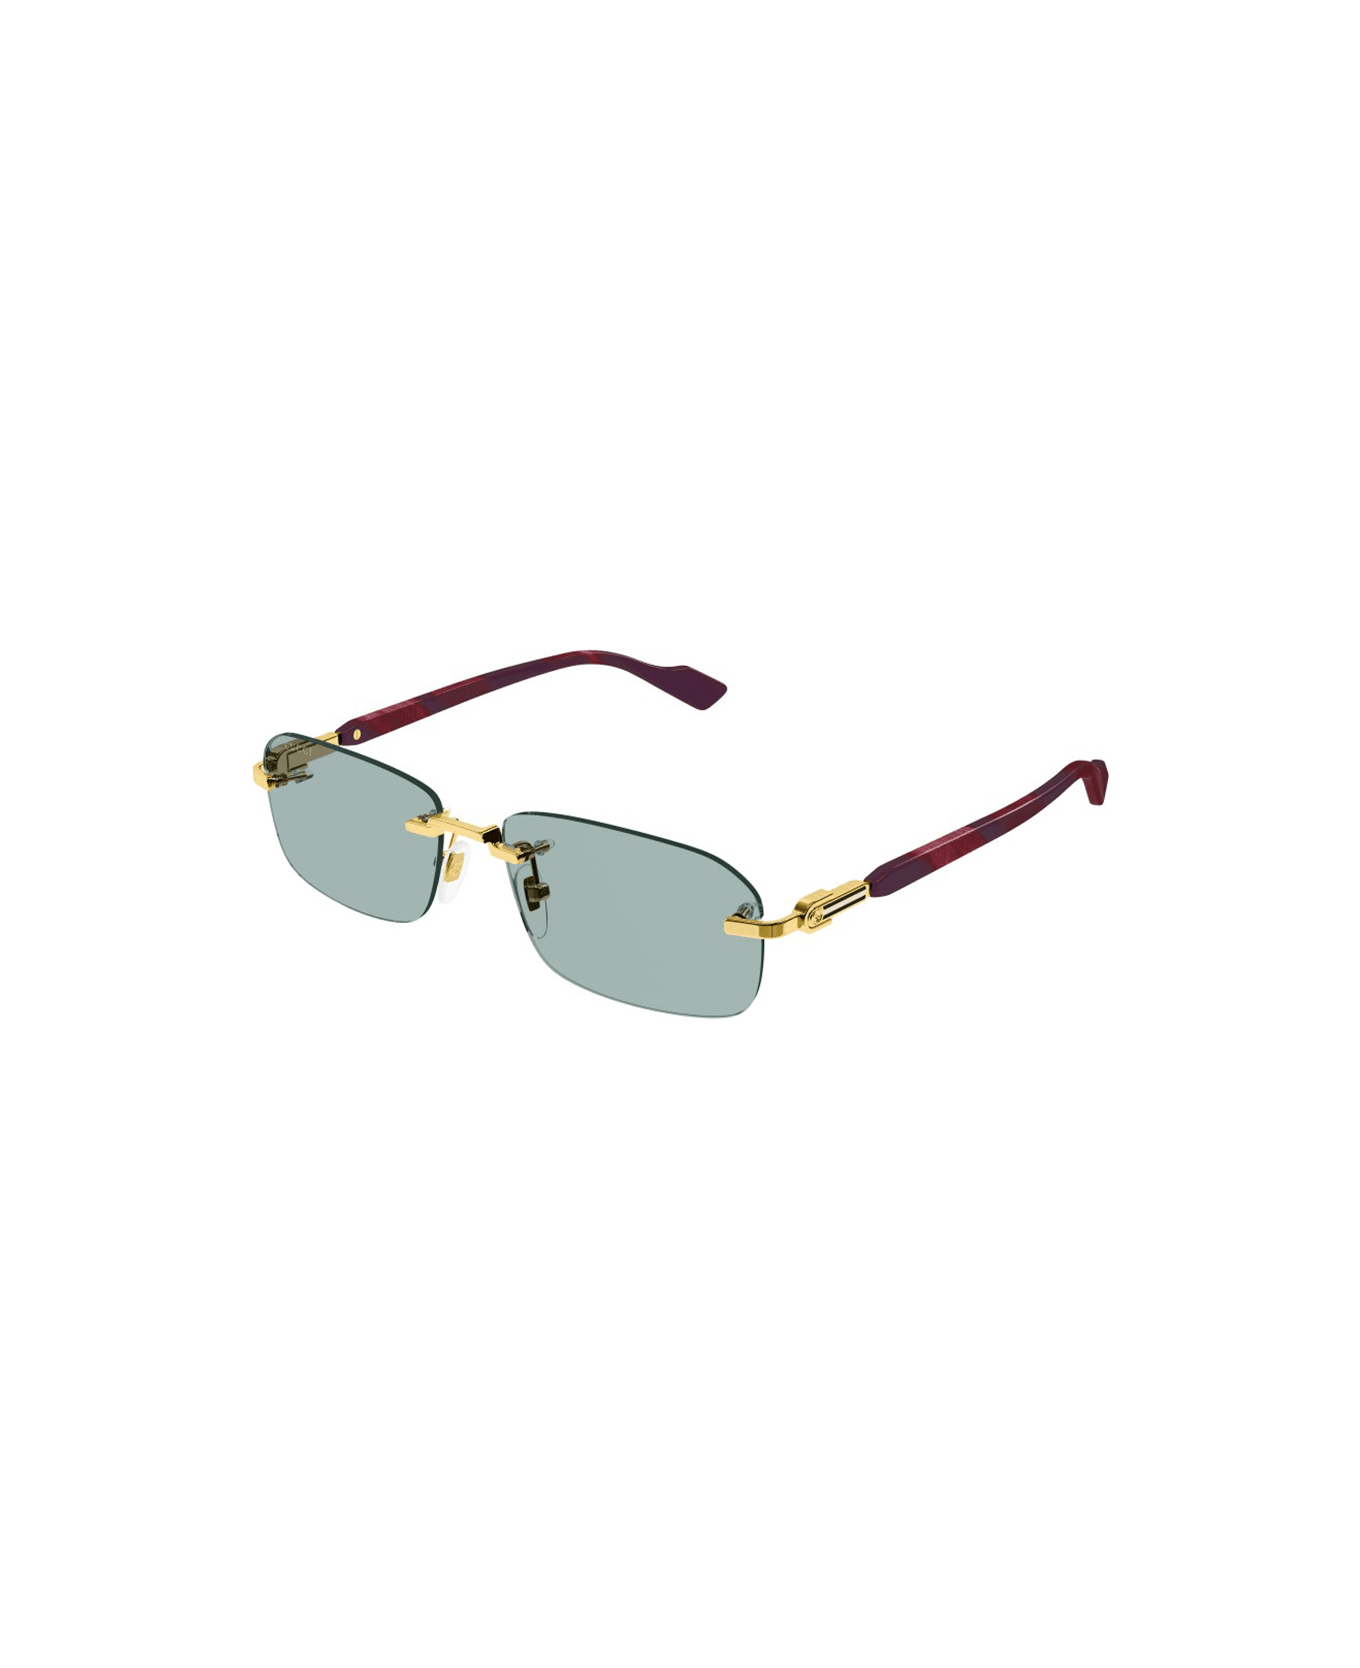 Gucci Eyewear Gg1221s Sunglasses - 003 gold burgundy green